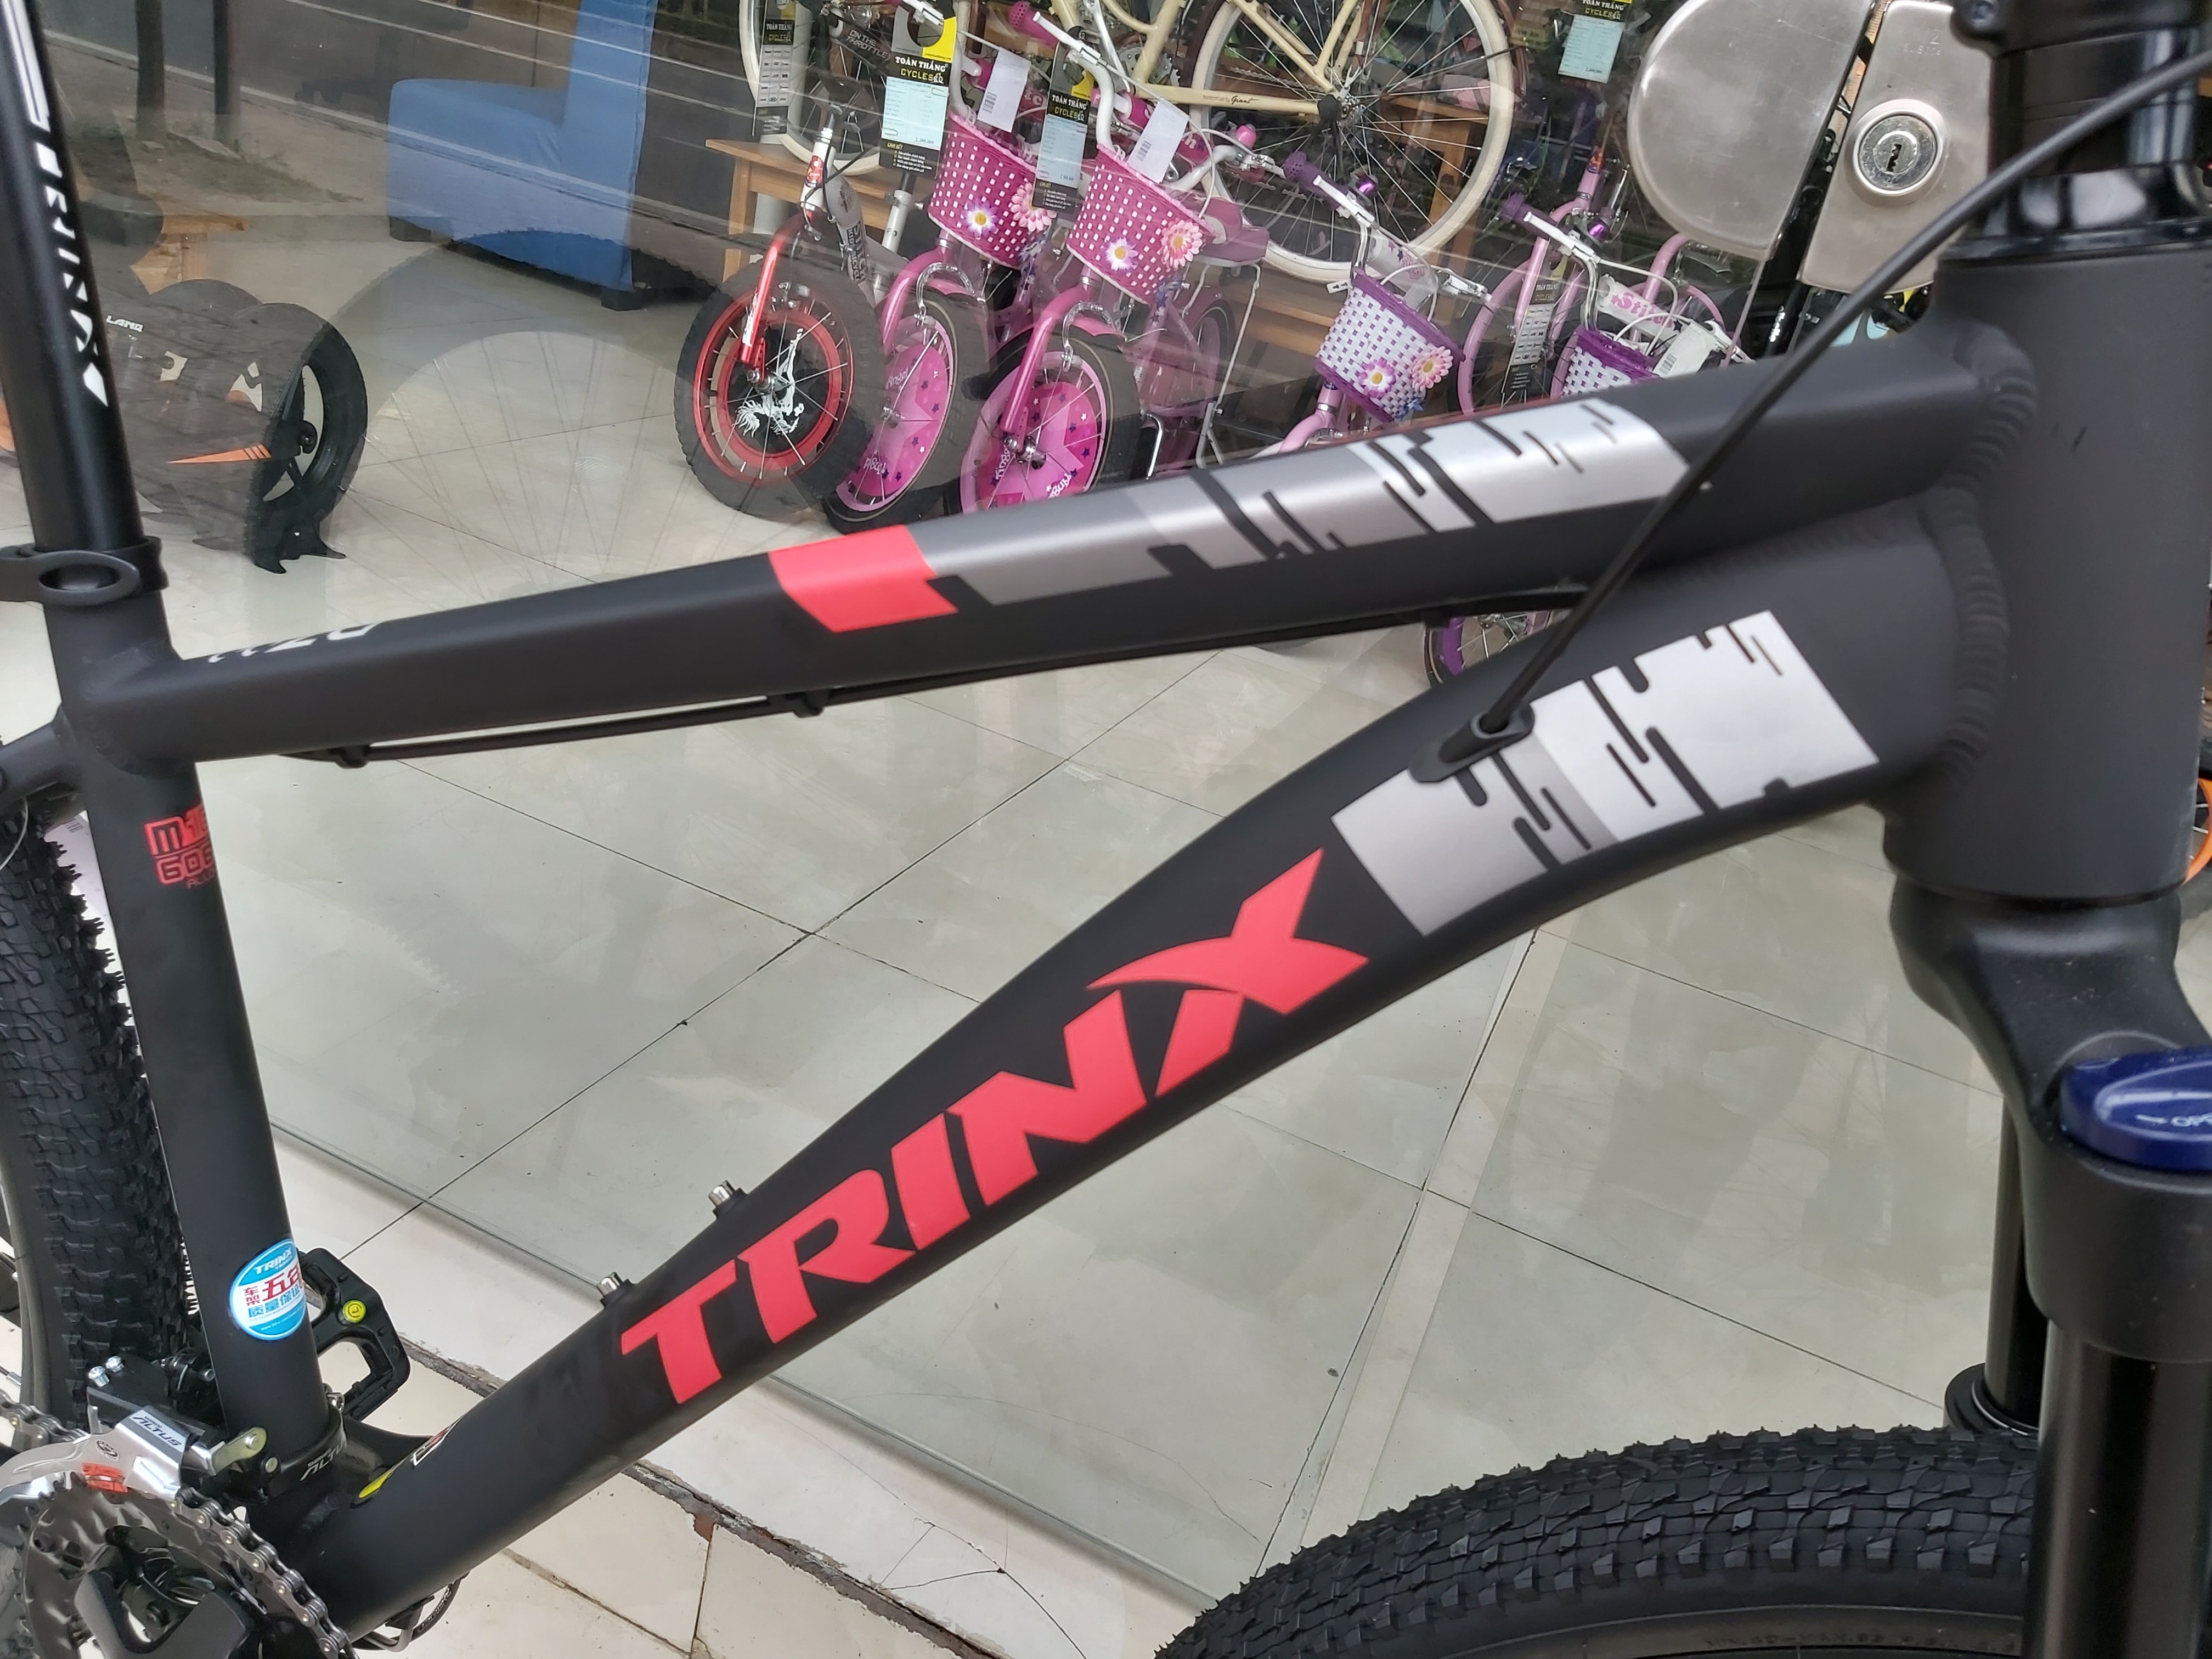 Xe đạp địa hình TRINX Elite D700 2019 Black Red